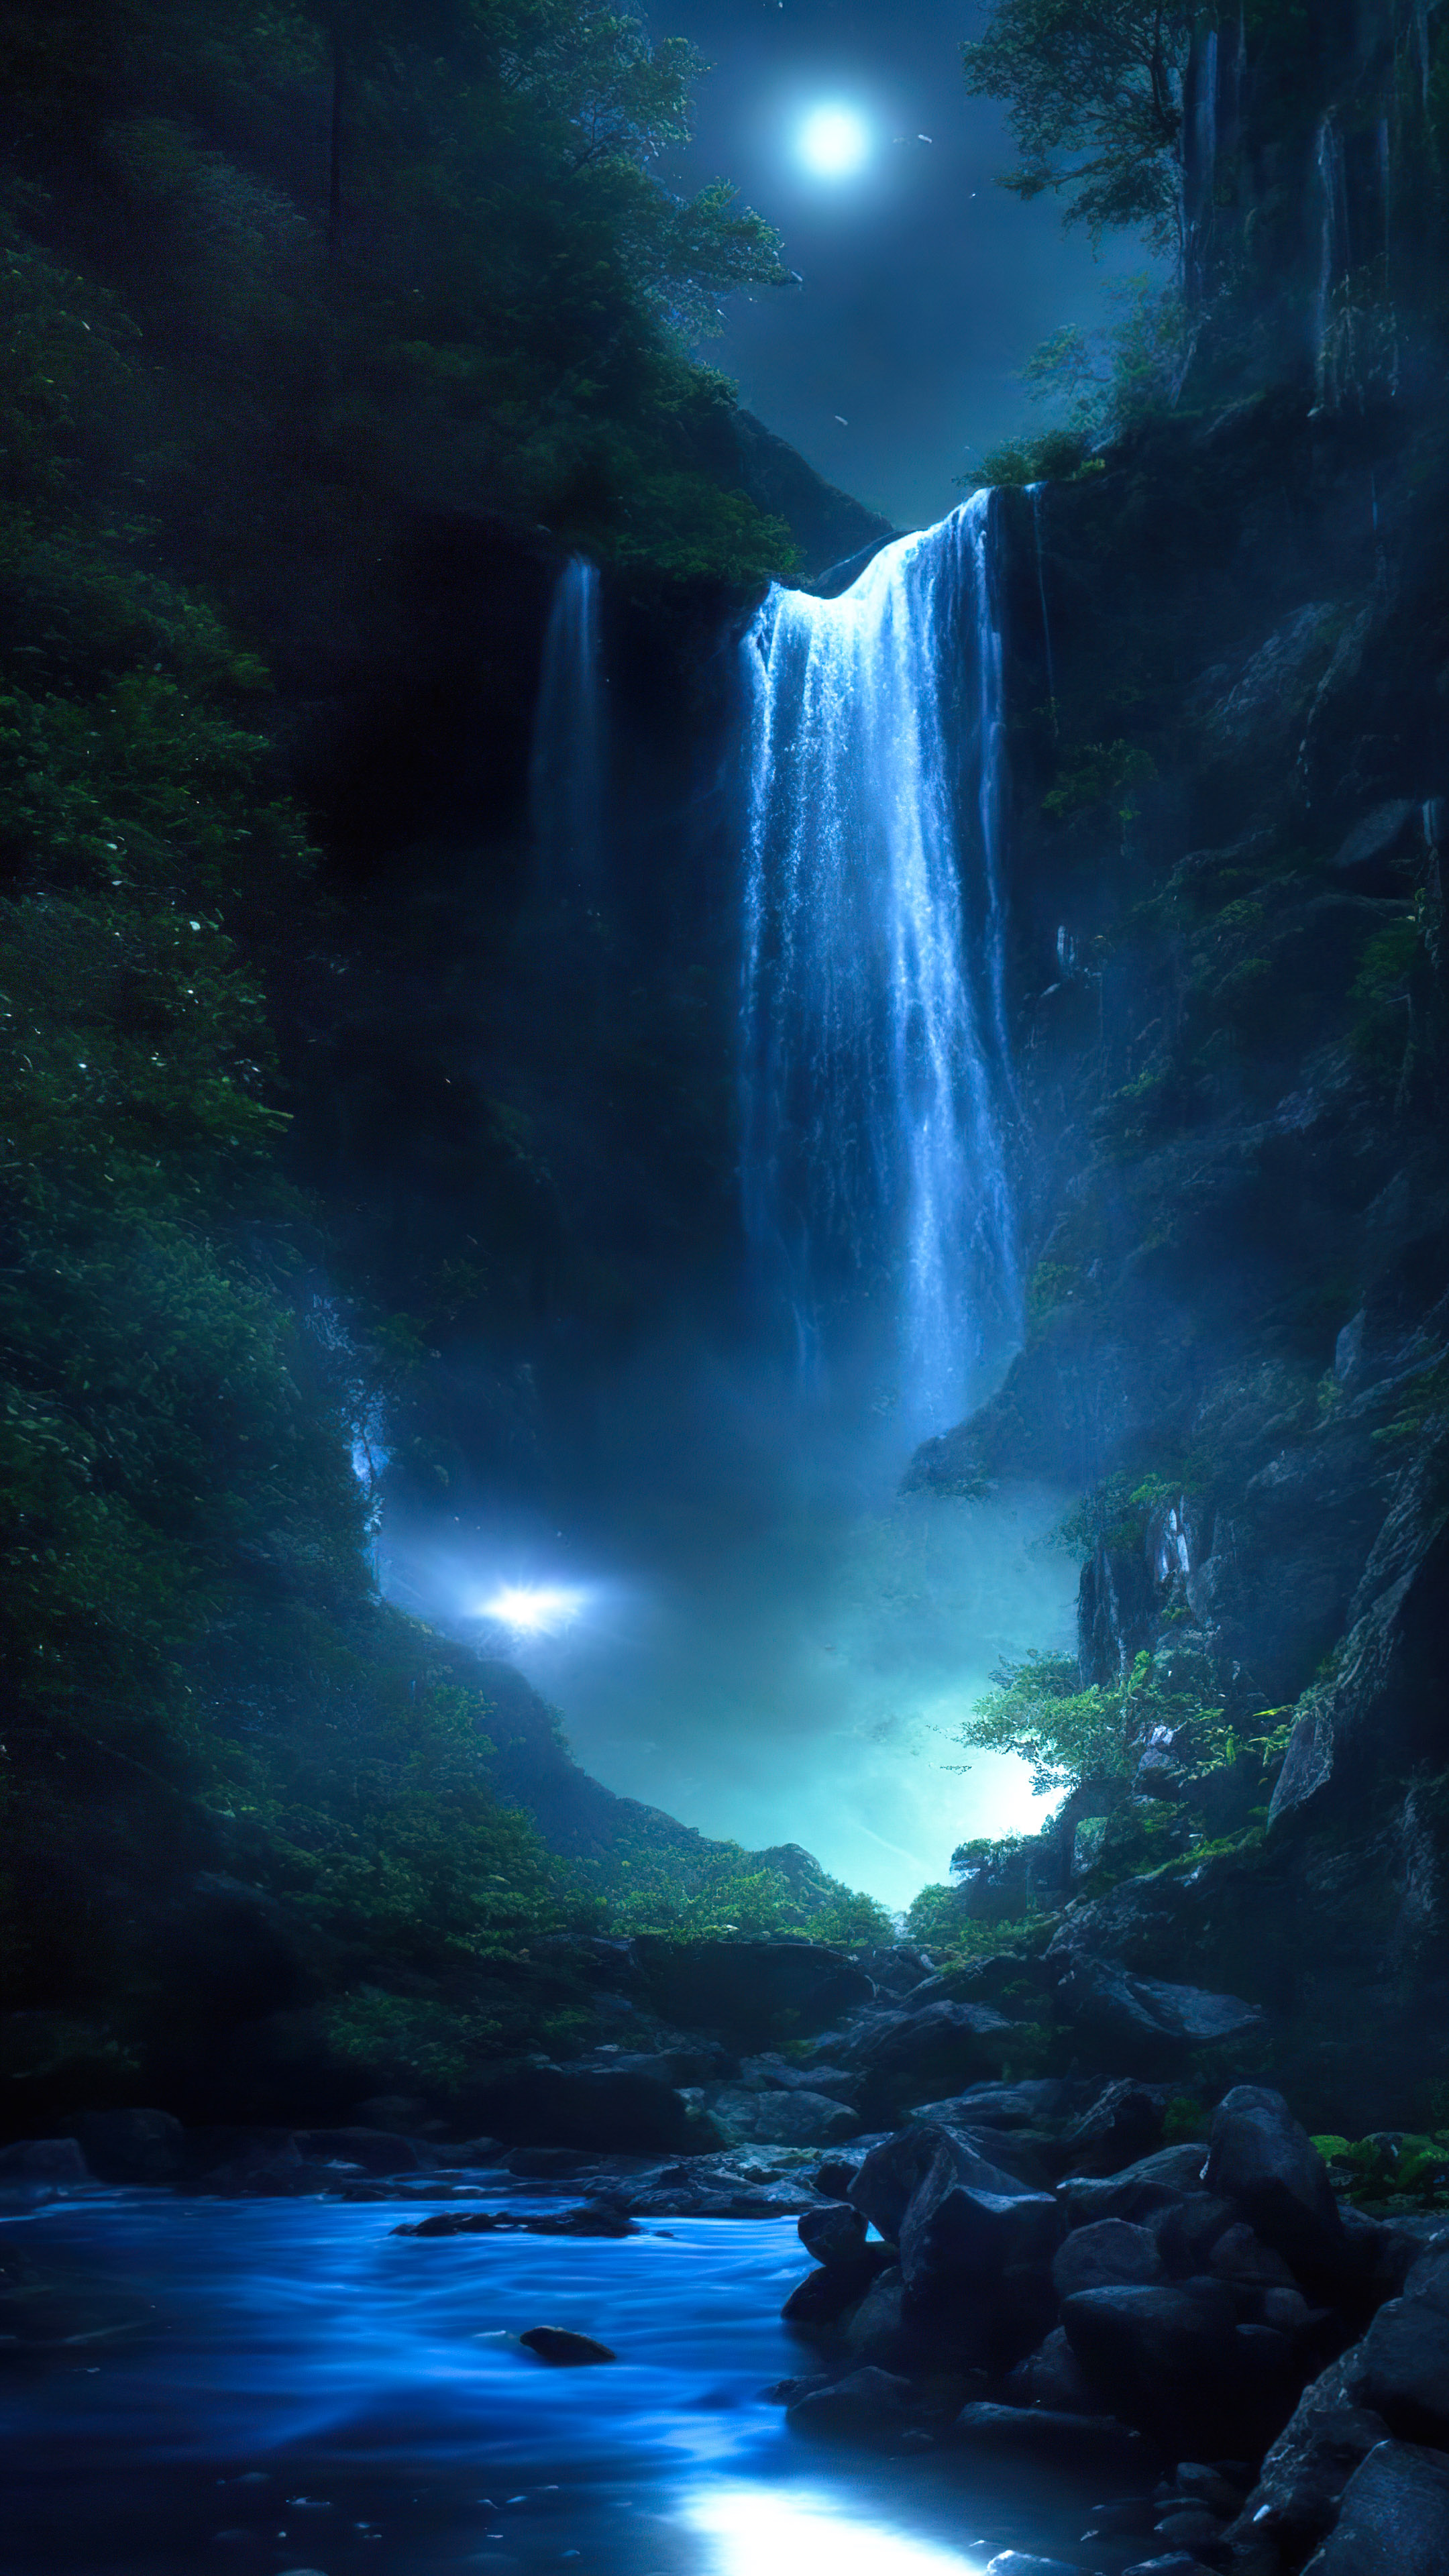 Capturez l'essence du paradis avec notre magnifique fond d'écran de cascade, présentant une cascade magique illuminée par le clair de lune, avec des lucioles dansant autour de ses eaux en cascade.